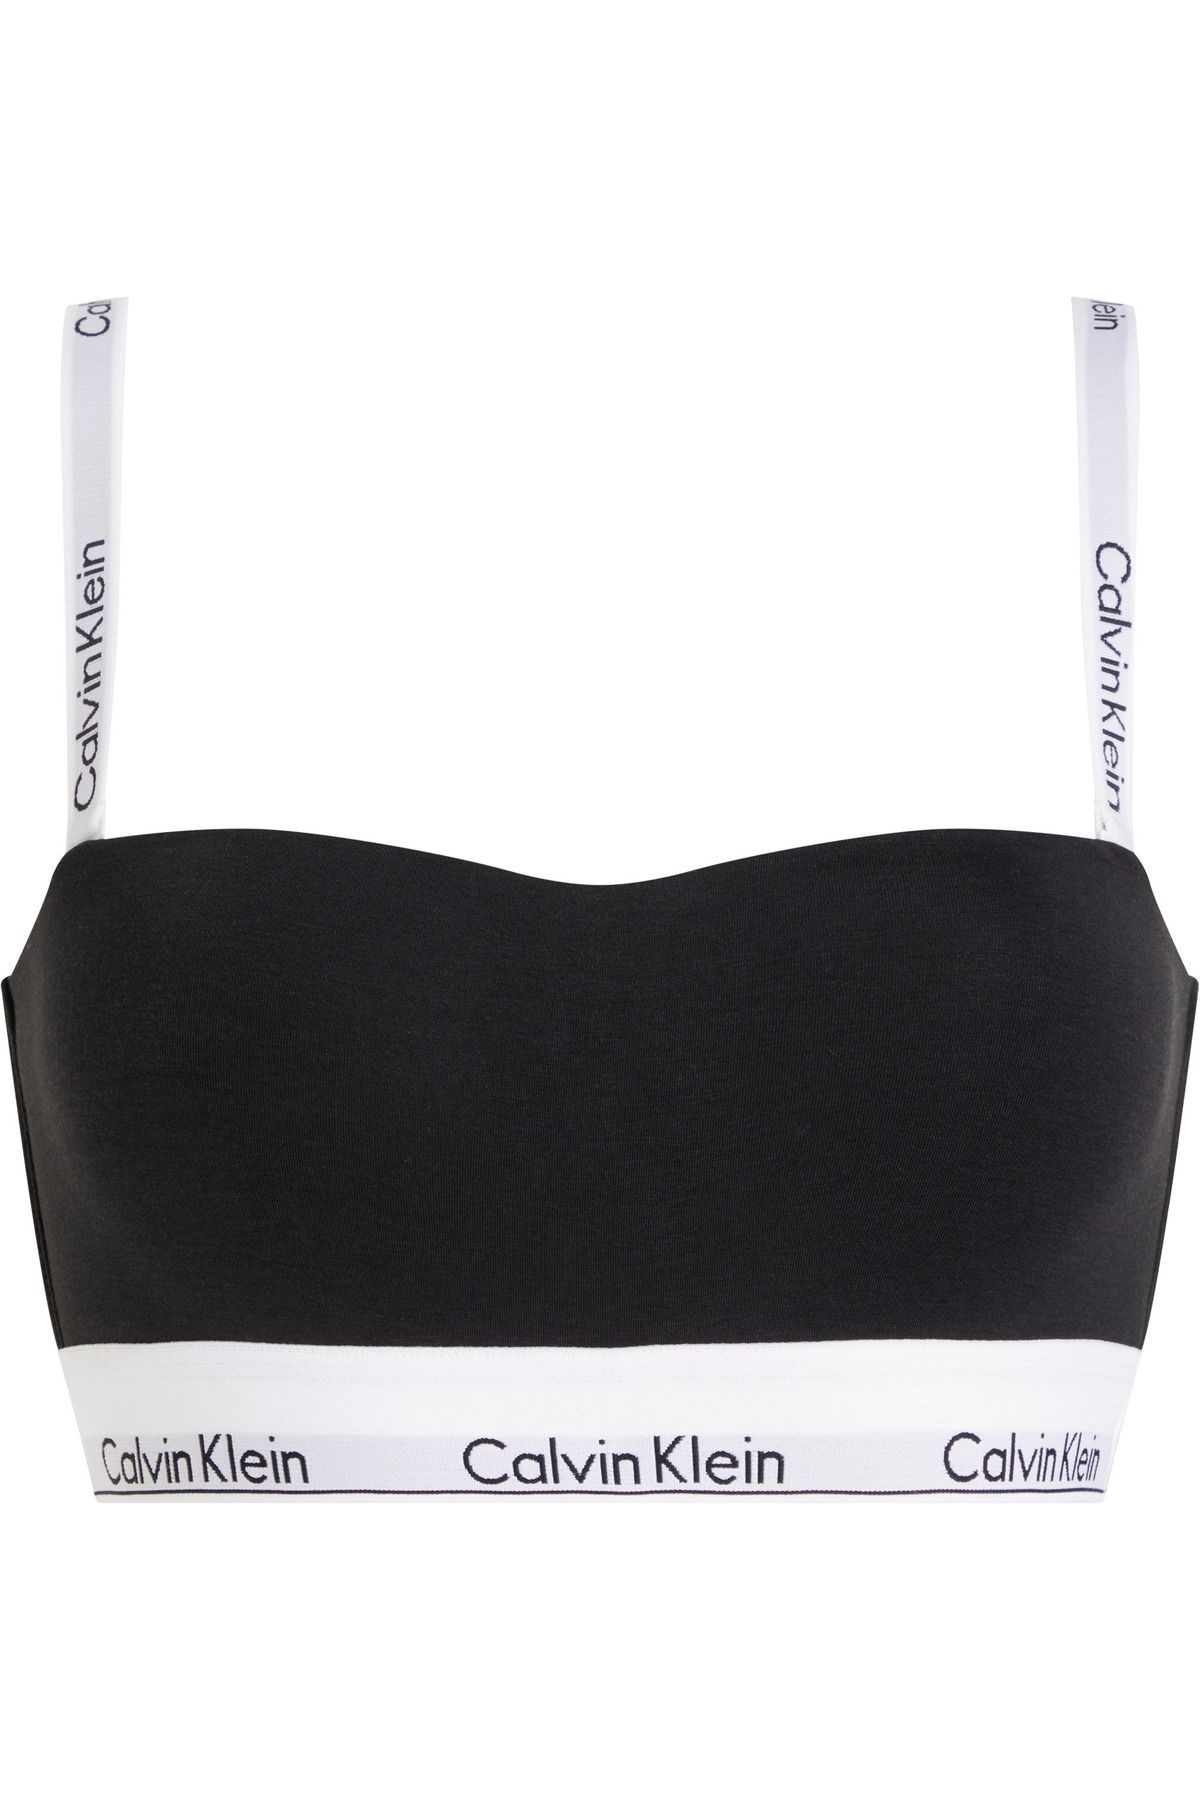 Calvin Klein Kadın Marka Logolu Elastik Bantlı Günlük Kullanıma Uygun Siyah Spor Sütyeni 000QF7628E-UB1